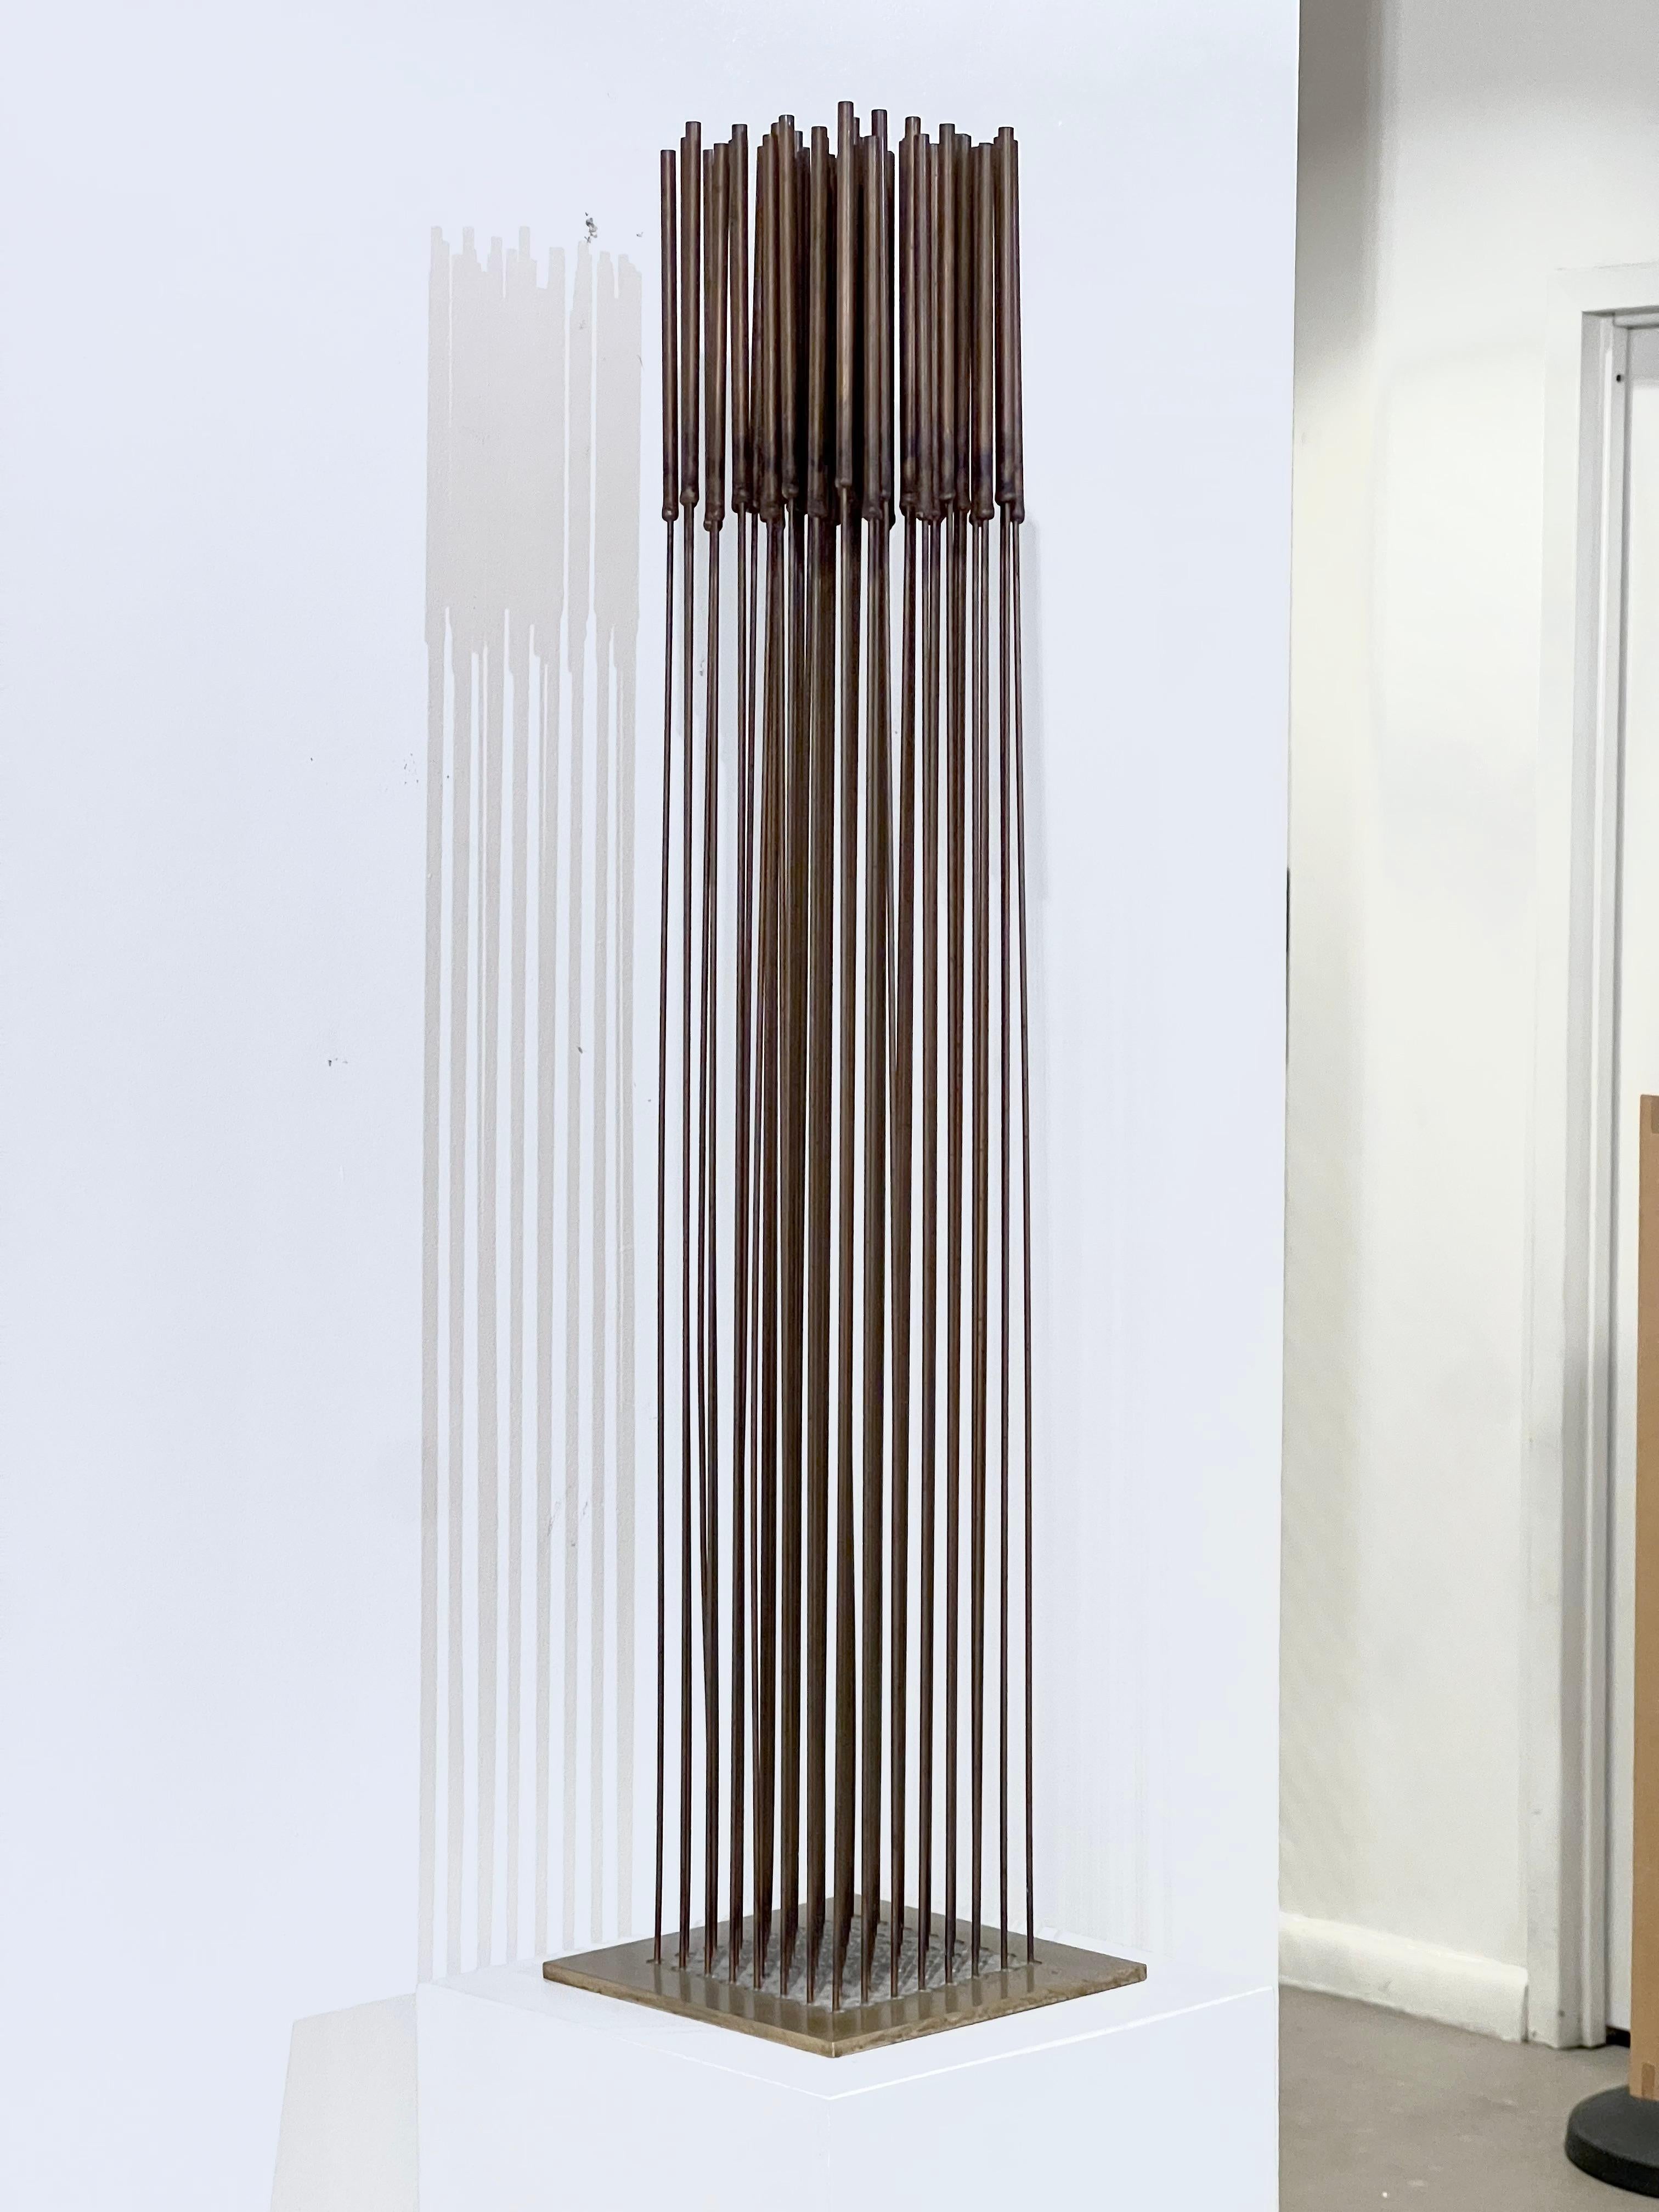 Eine Klangstäbchen-Skulptur von Harry Bertoia (1915-1978). Eine wünschenswerte Größe für die Ausstellung in der Wohnung und eine typisch wunderbare Klangqualität.